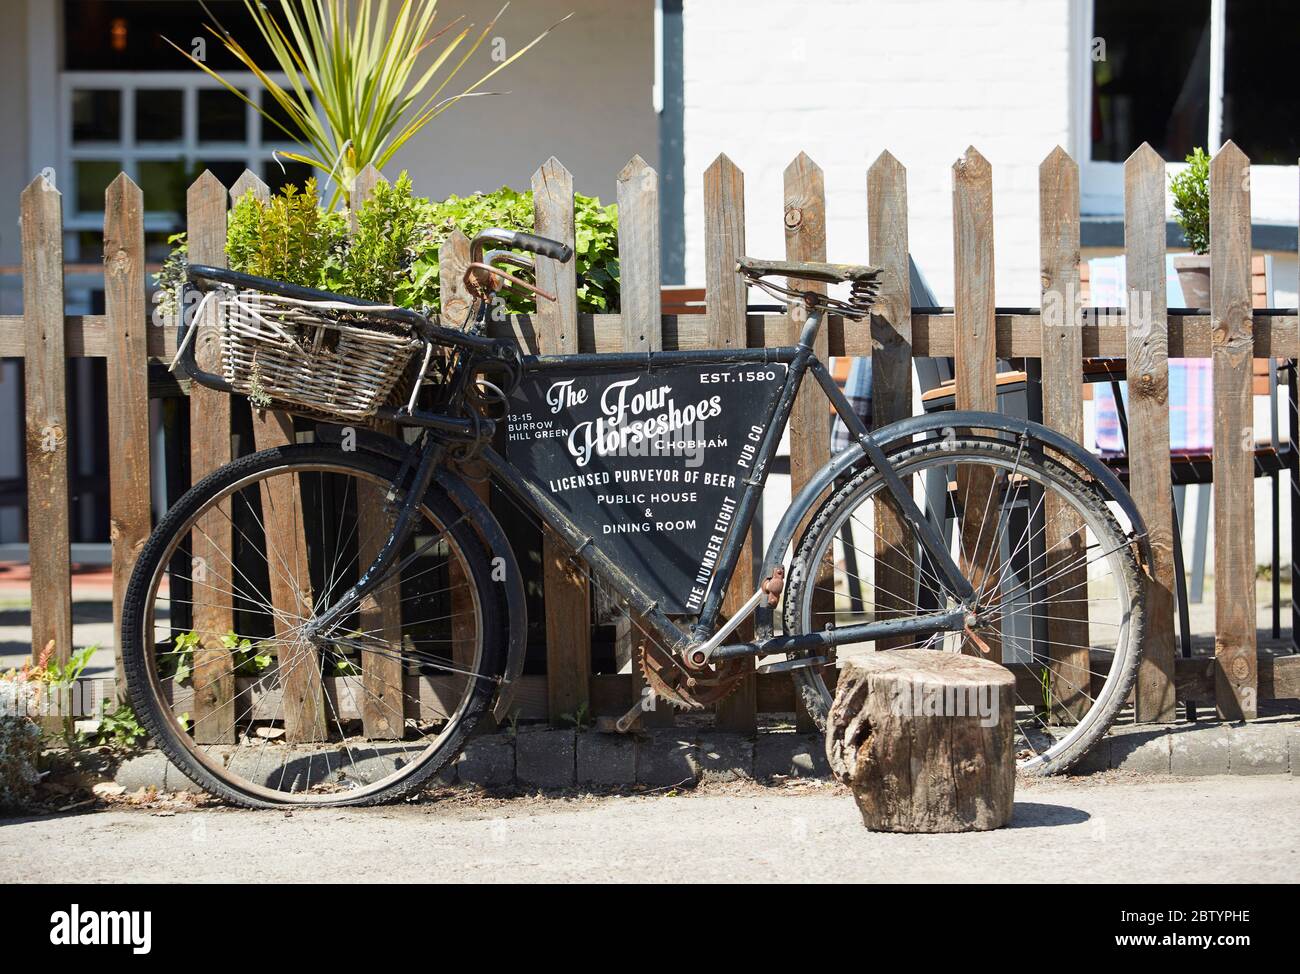 Vélo de livraison traditionnel devant le pub et restaurant four Horseshoes, Chobham, Surrey, Angleterre, Royaume-Uni Banque D'Images